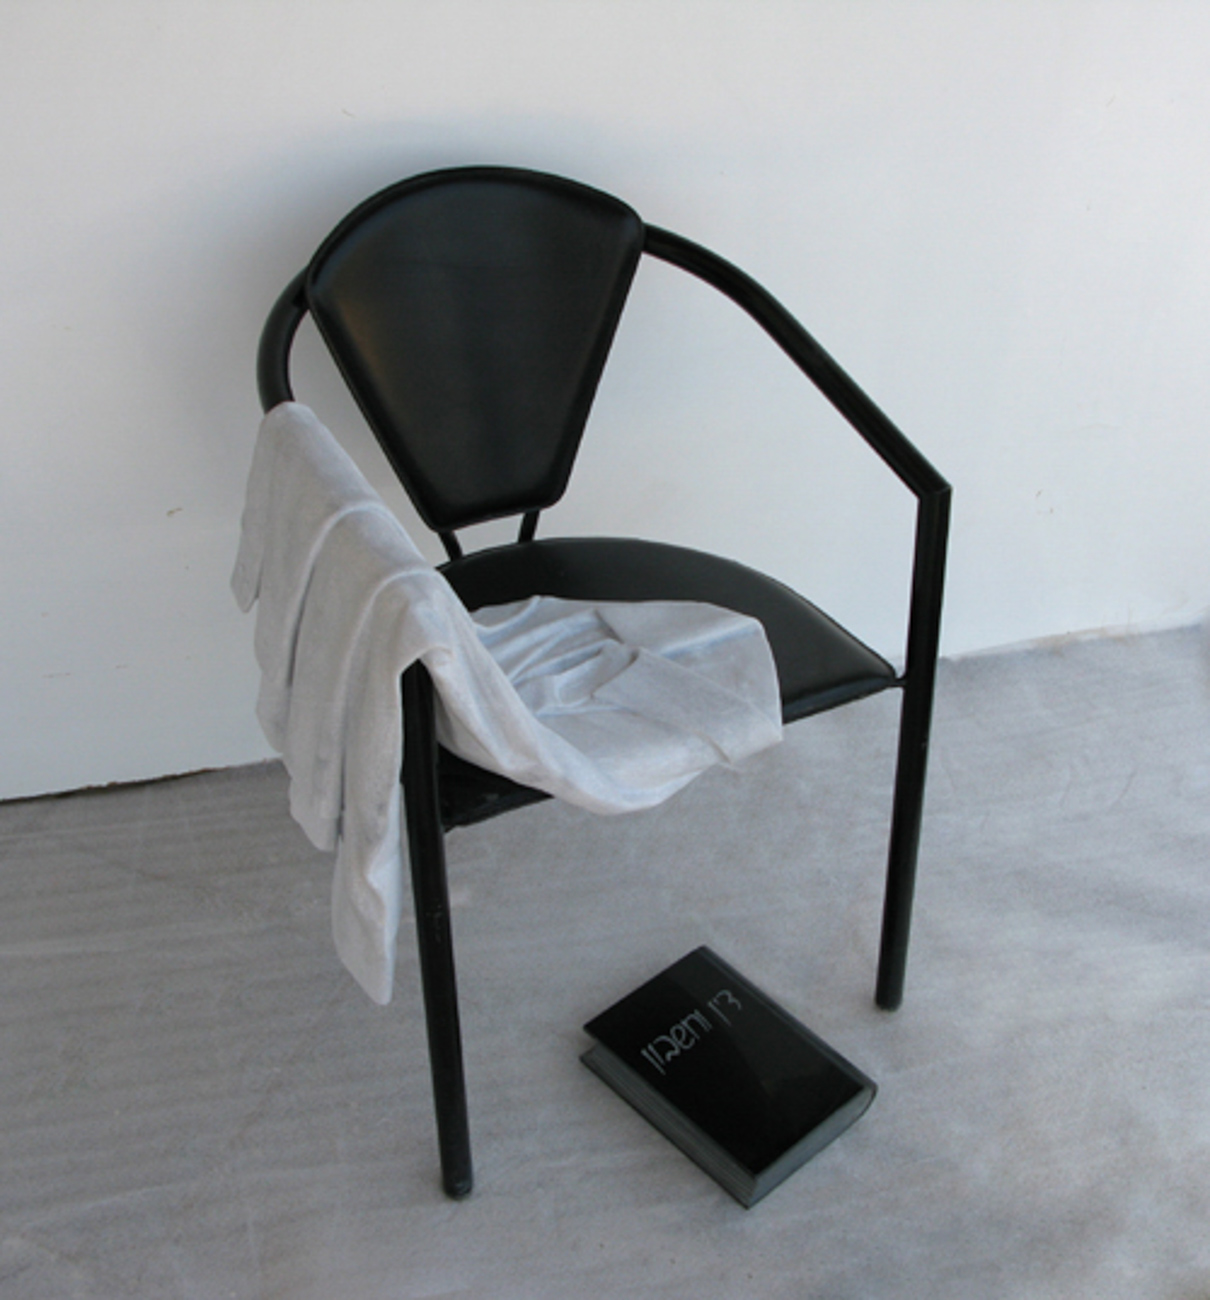 בת-עמי הלרמן / כיסא עם חולצת גבר, שיש, 2006